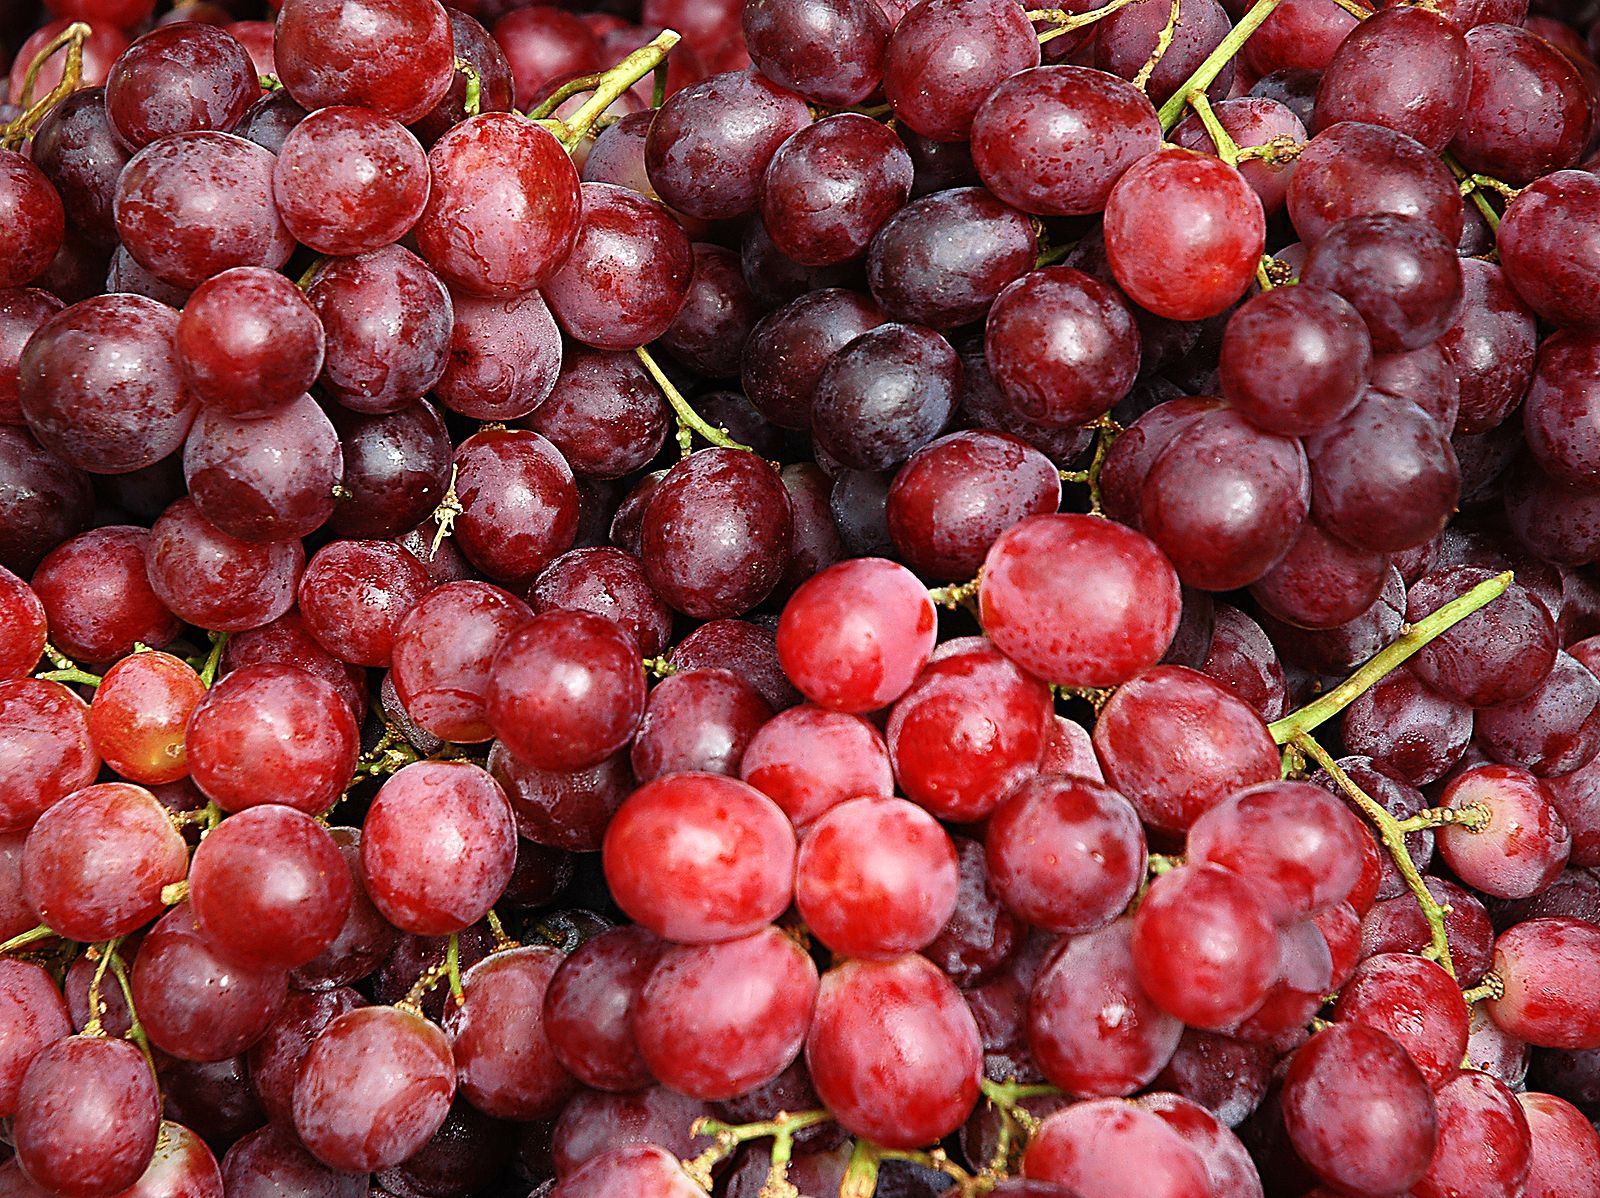 Las uvas rojas contribuyen a la prevención del cáncer y otras enfermedades crónicas